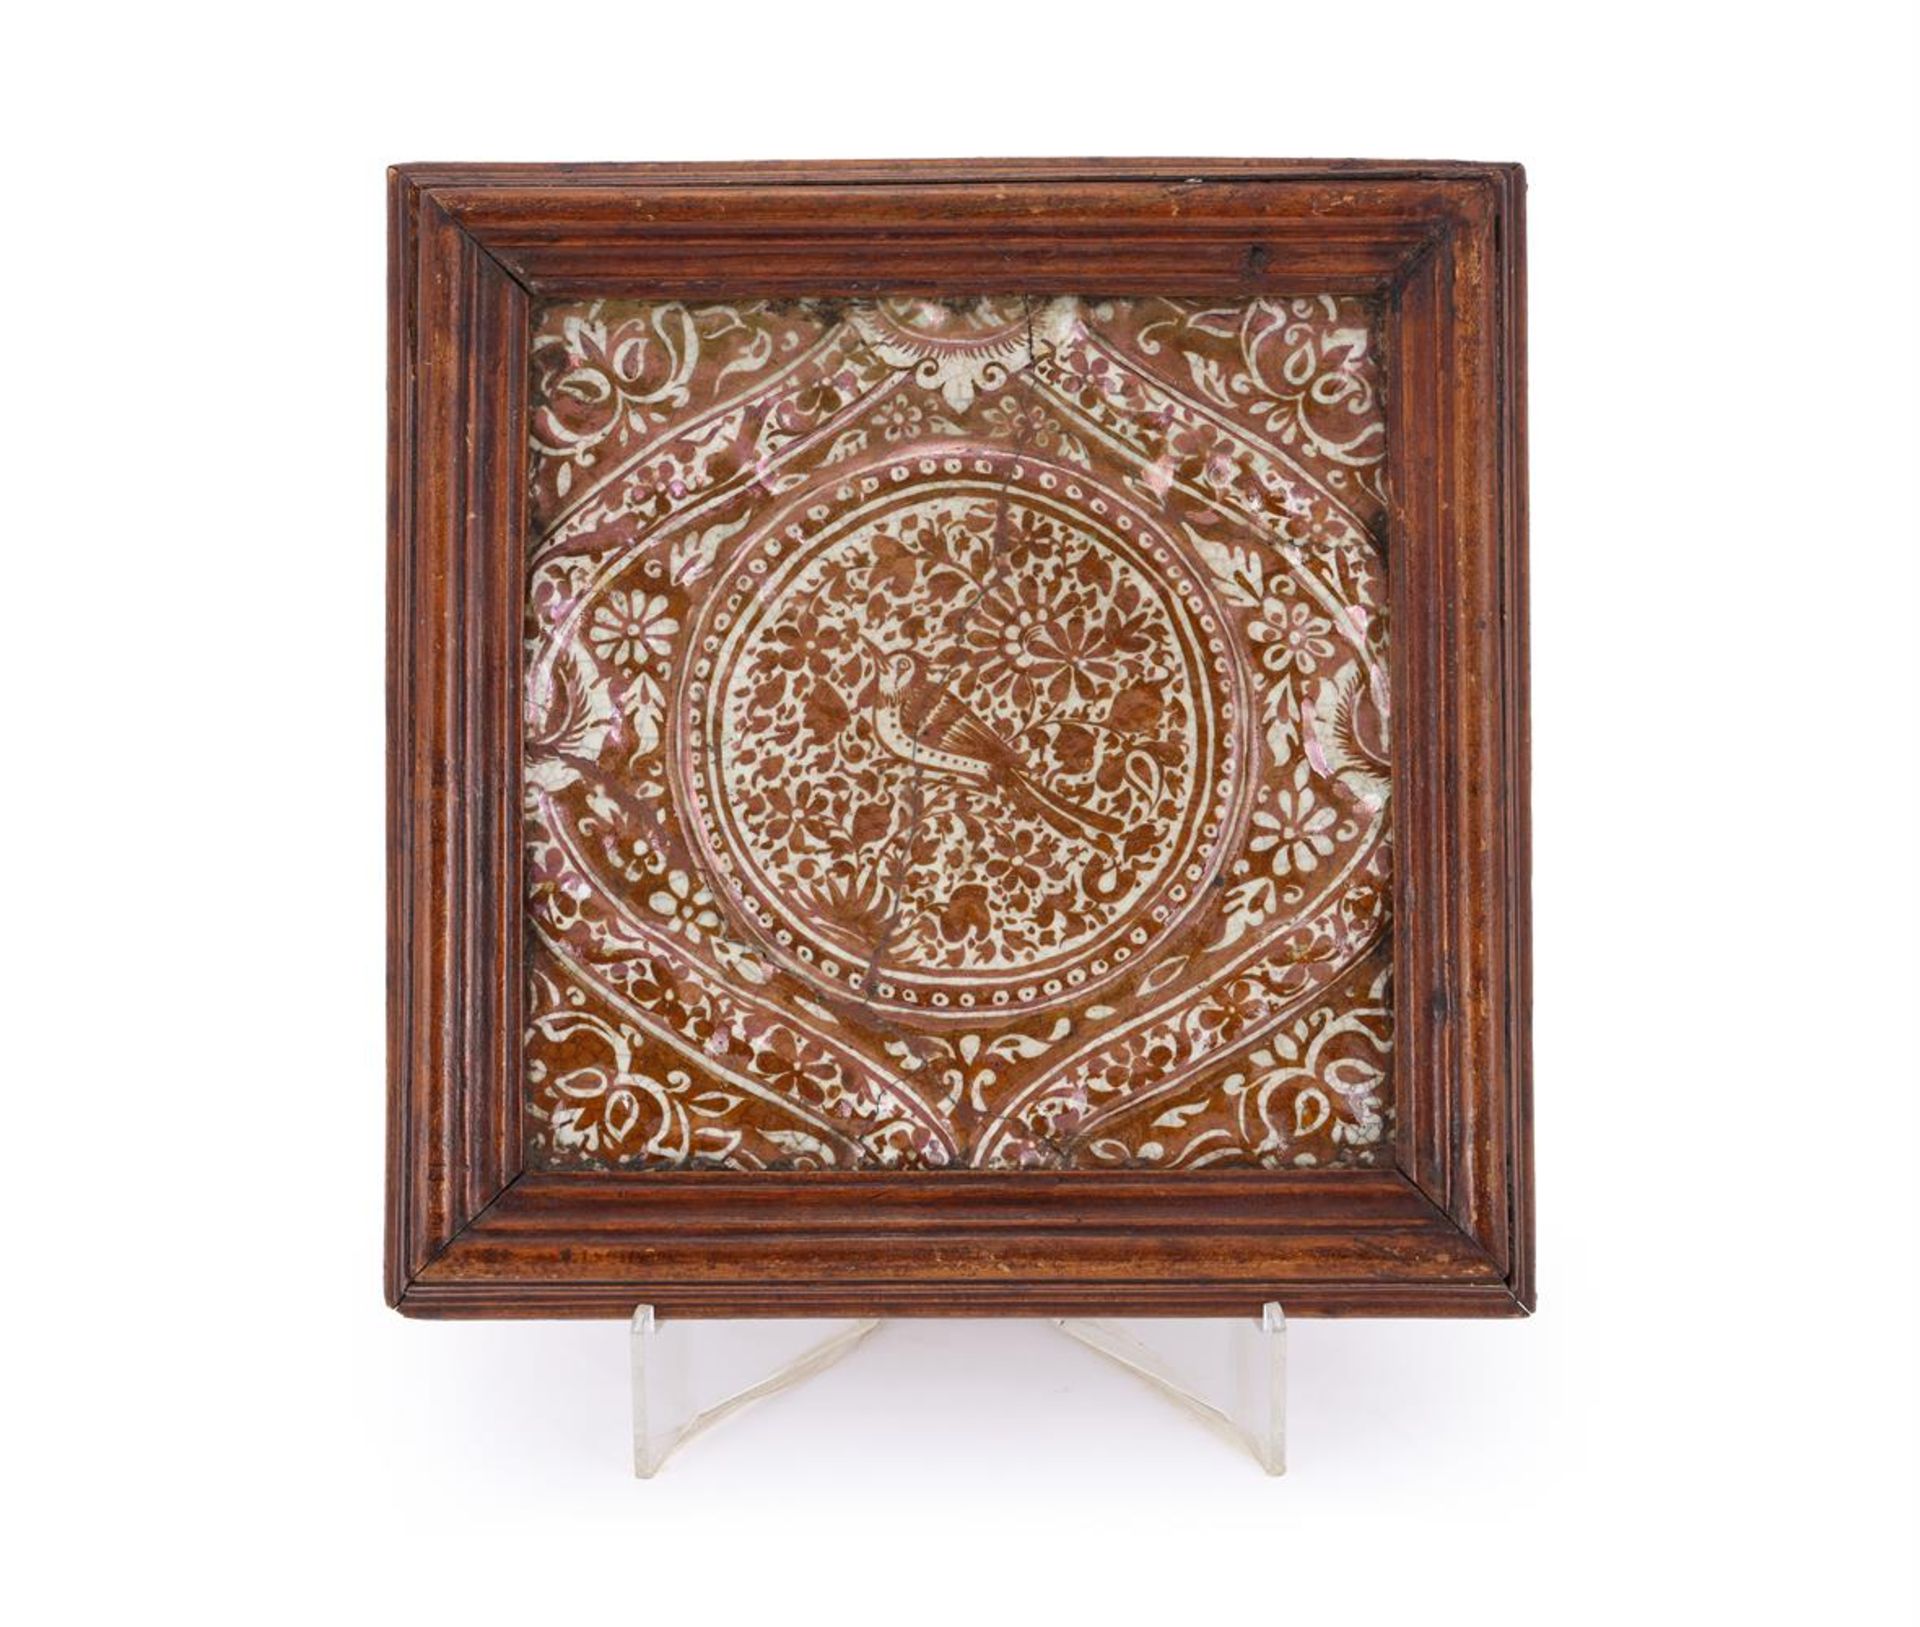 A Qajar lustreware moulded tile